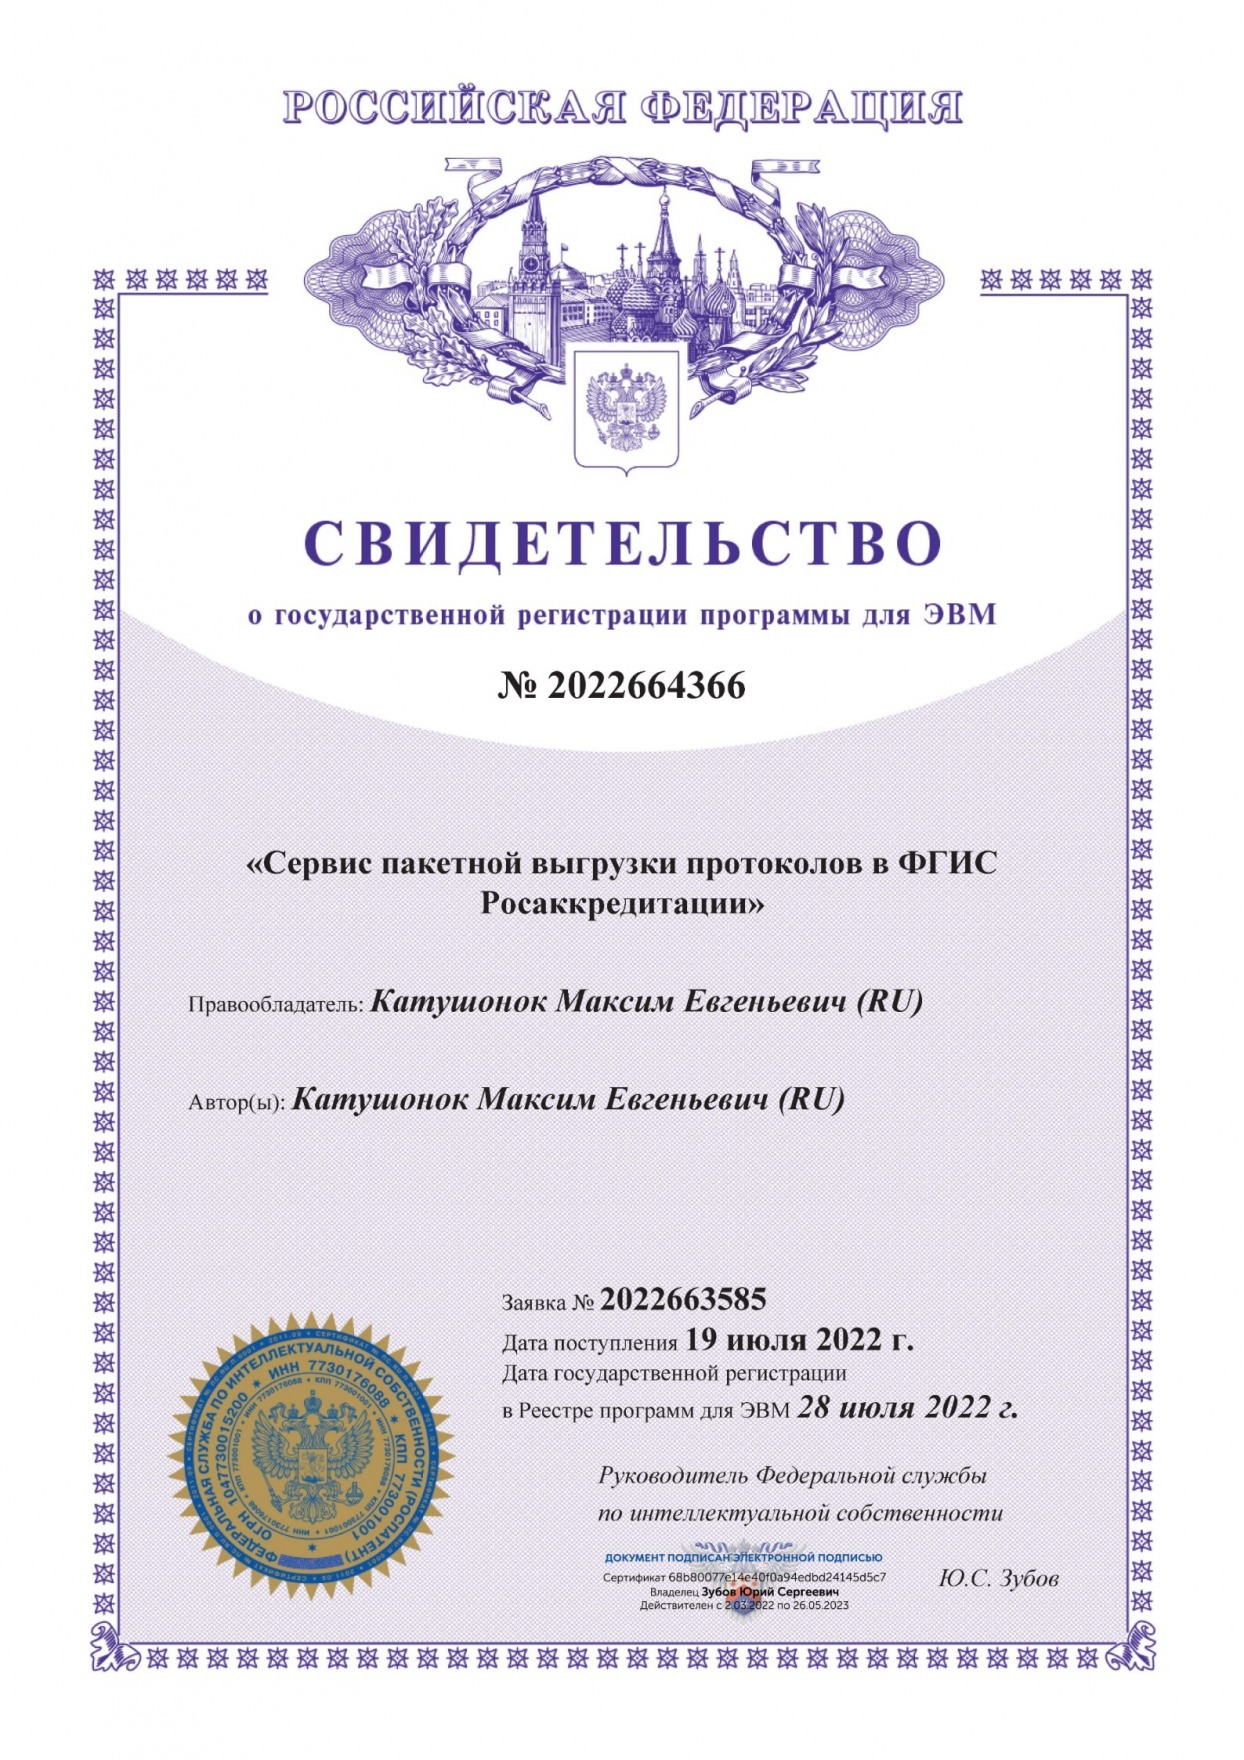 GET запрос на сайт fsa.gov.ru и получение ответа в LibreOffice Calc